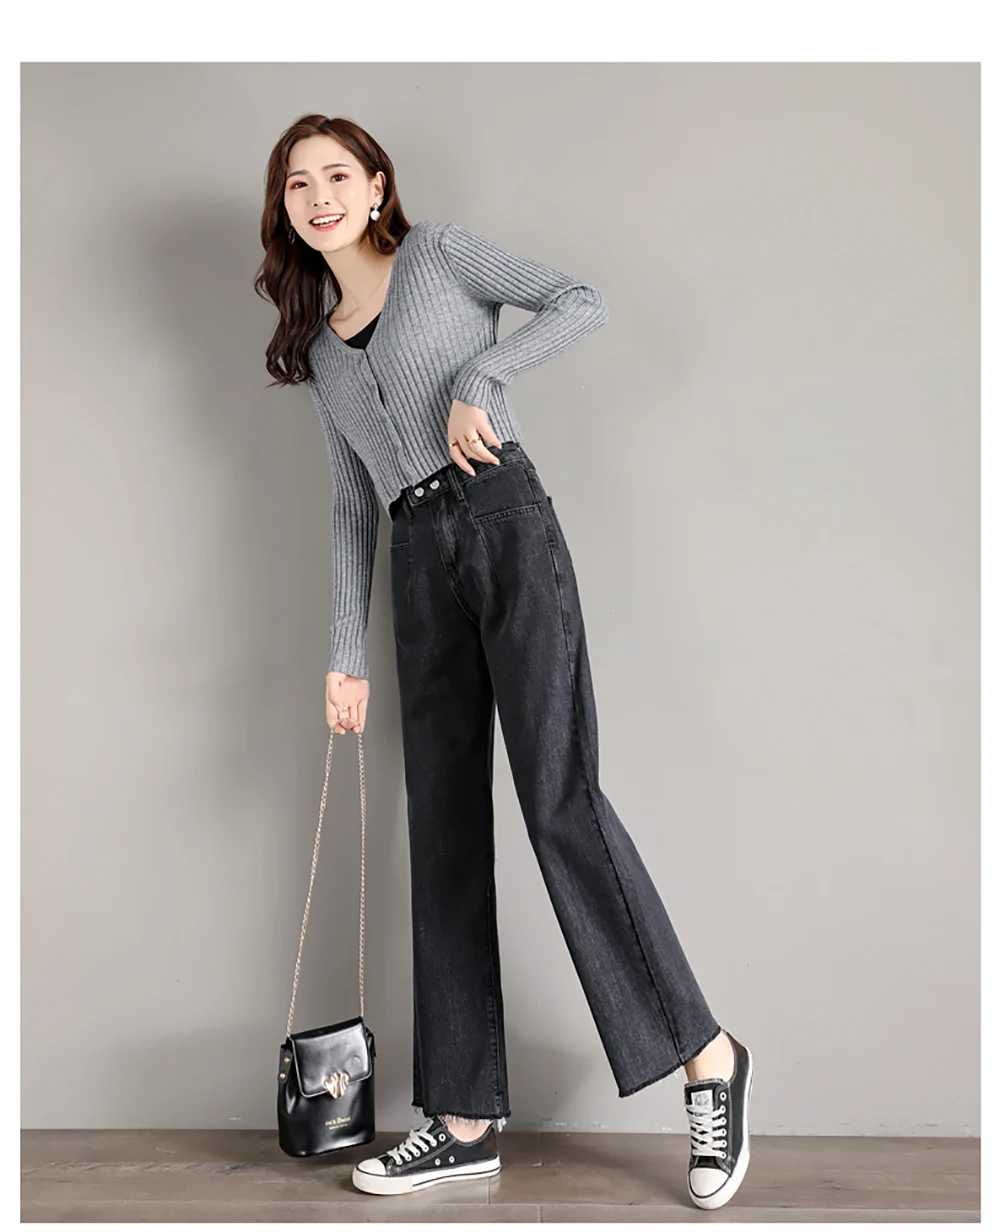 Zsrs женские джинсовые брюки свободные винтажные свободные джинсы с высокой талией женские джинсы в Корейском стиле универсальные Простые Длинные